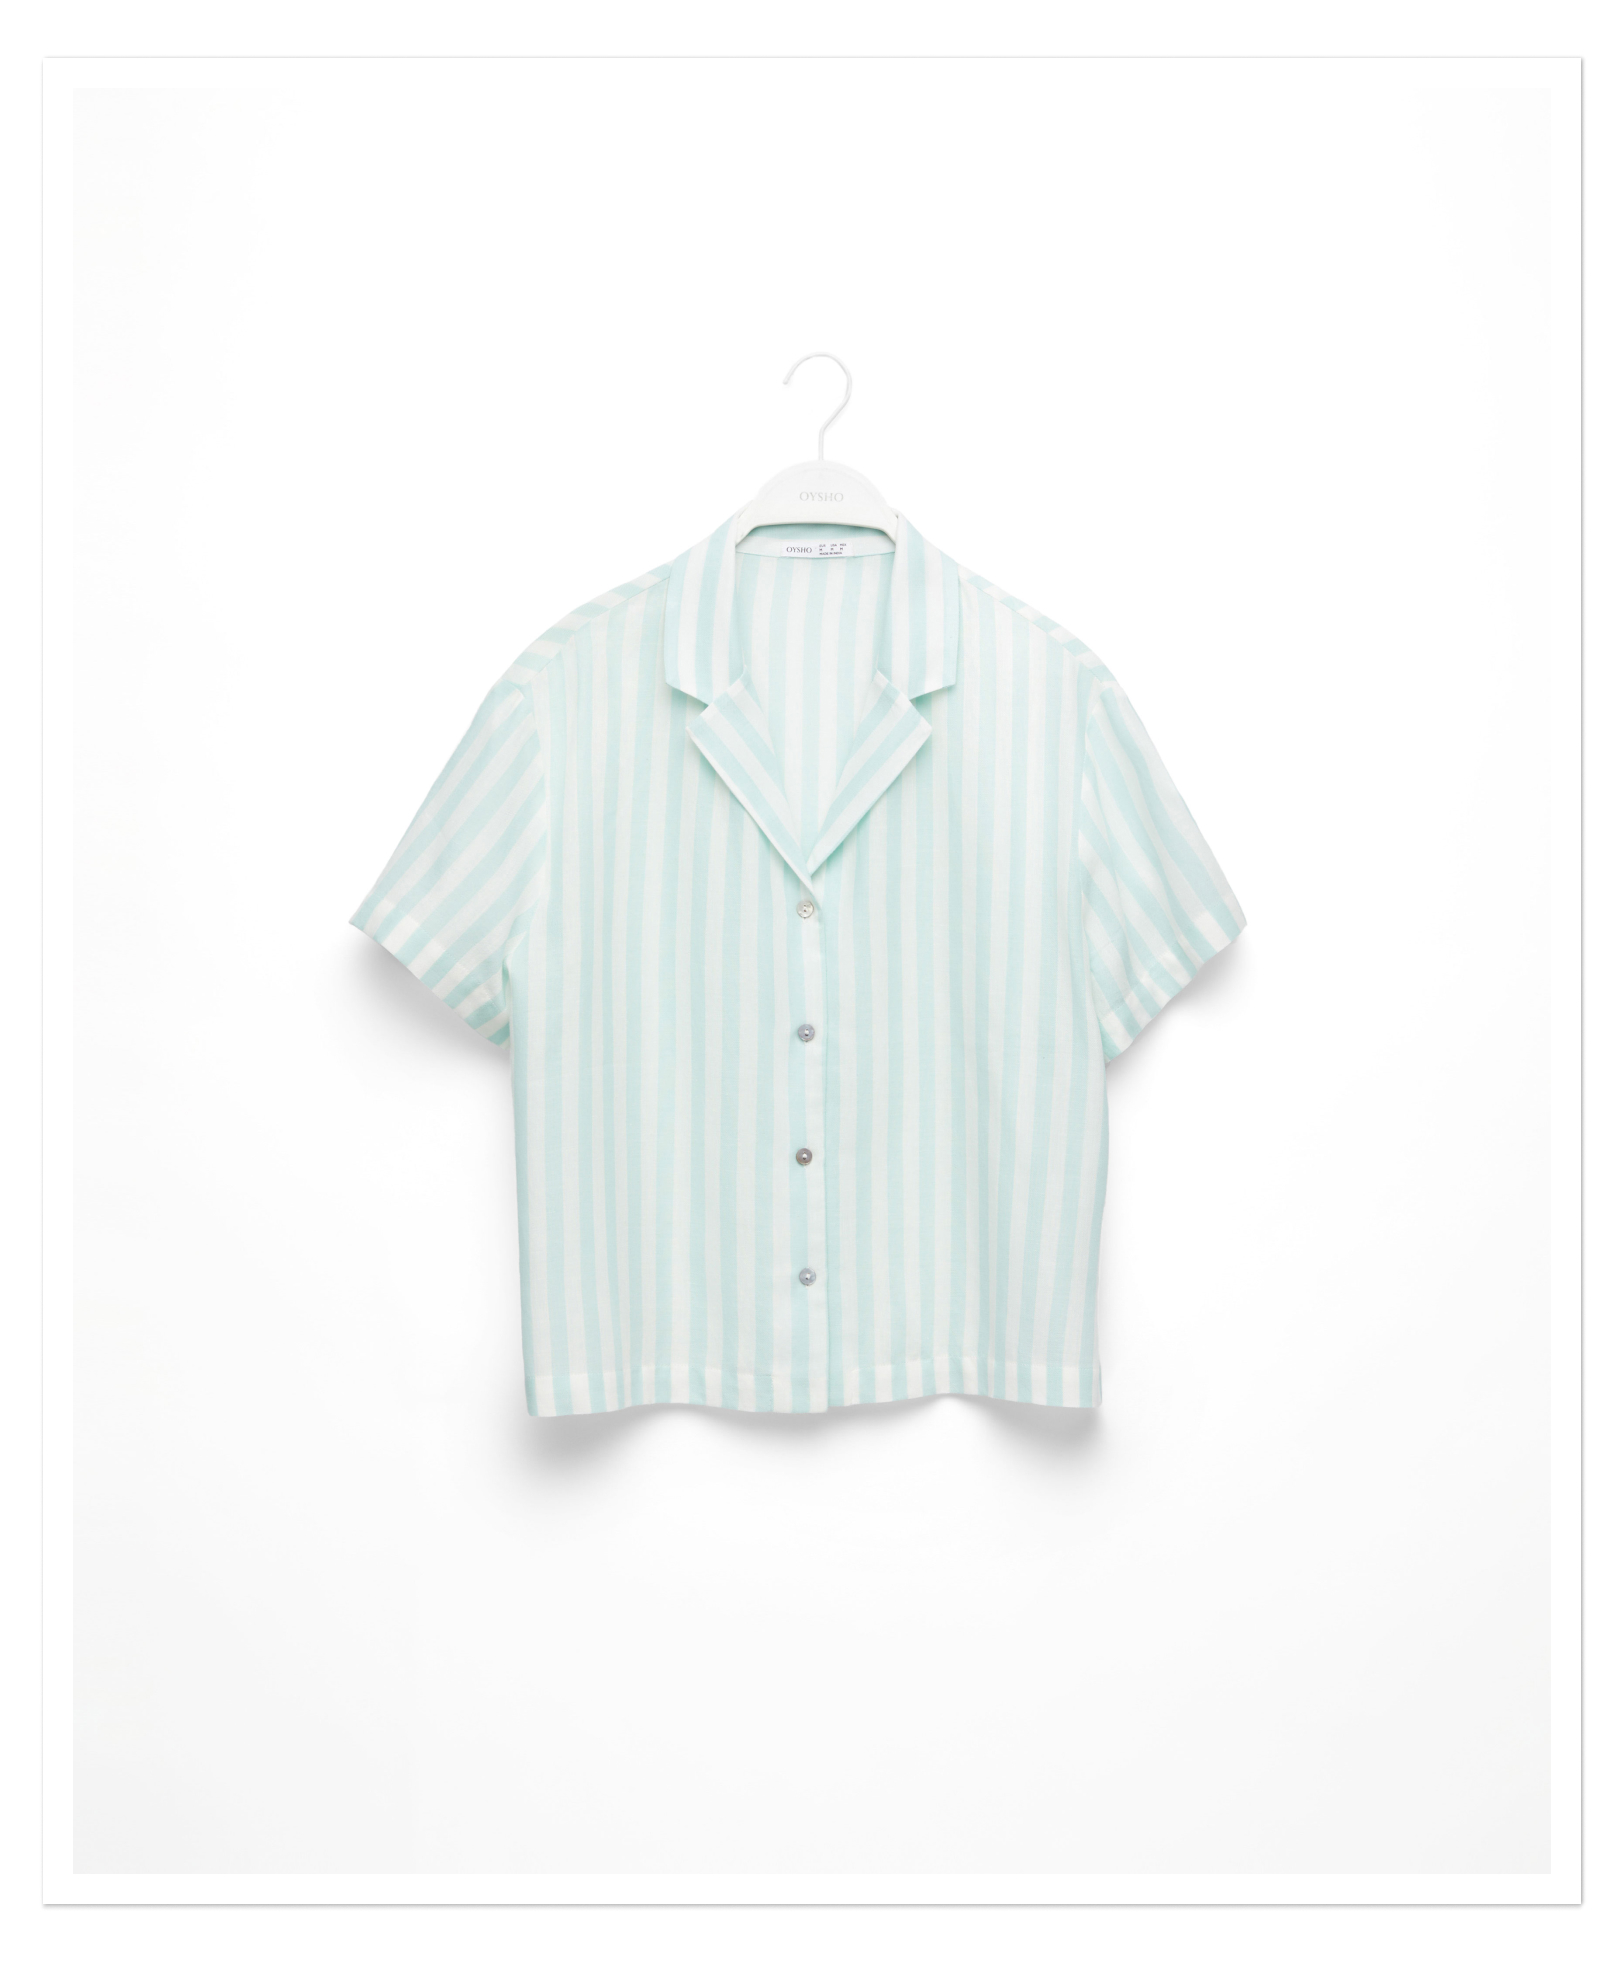 Κοντομάνικο πουκάμισο από 100% βαμβάκι με ρίγες